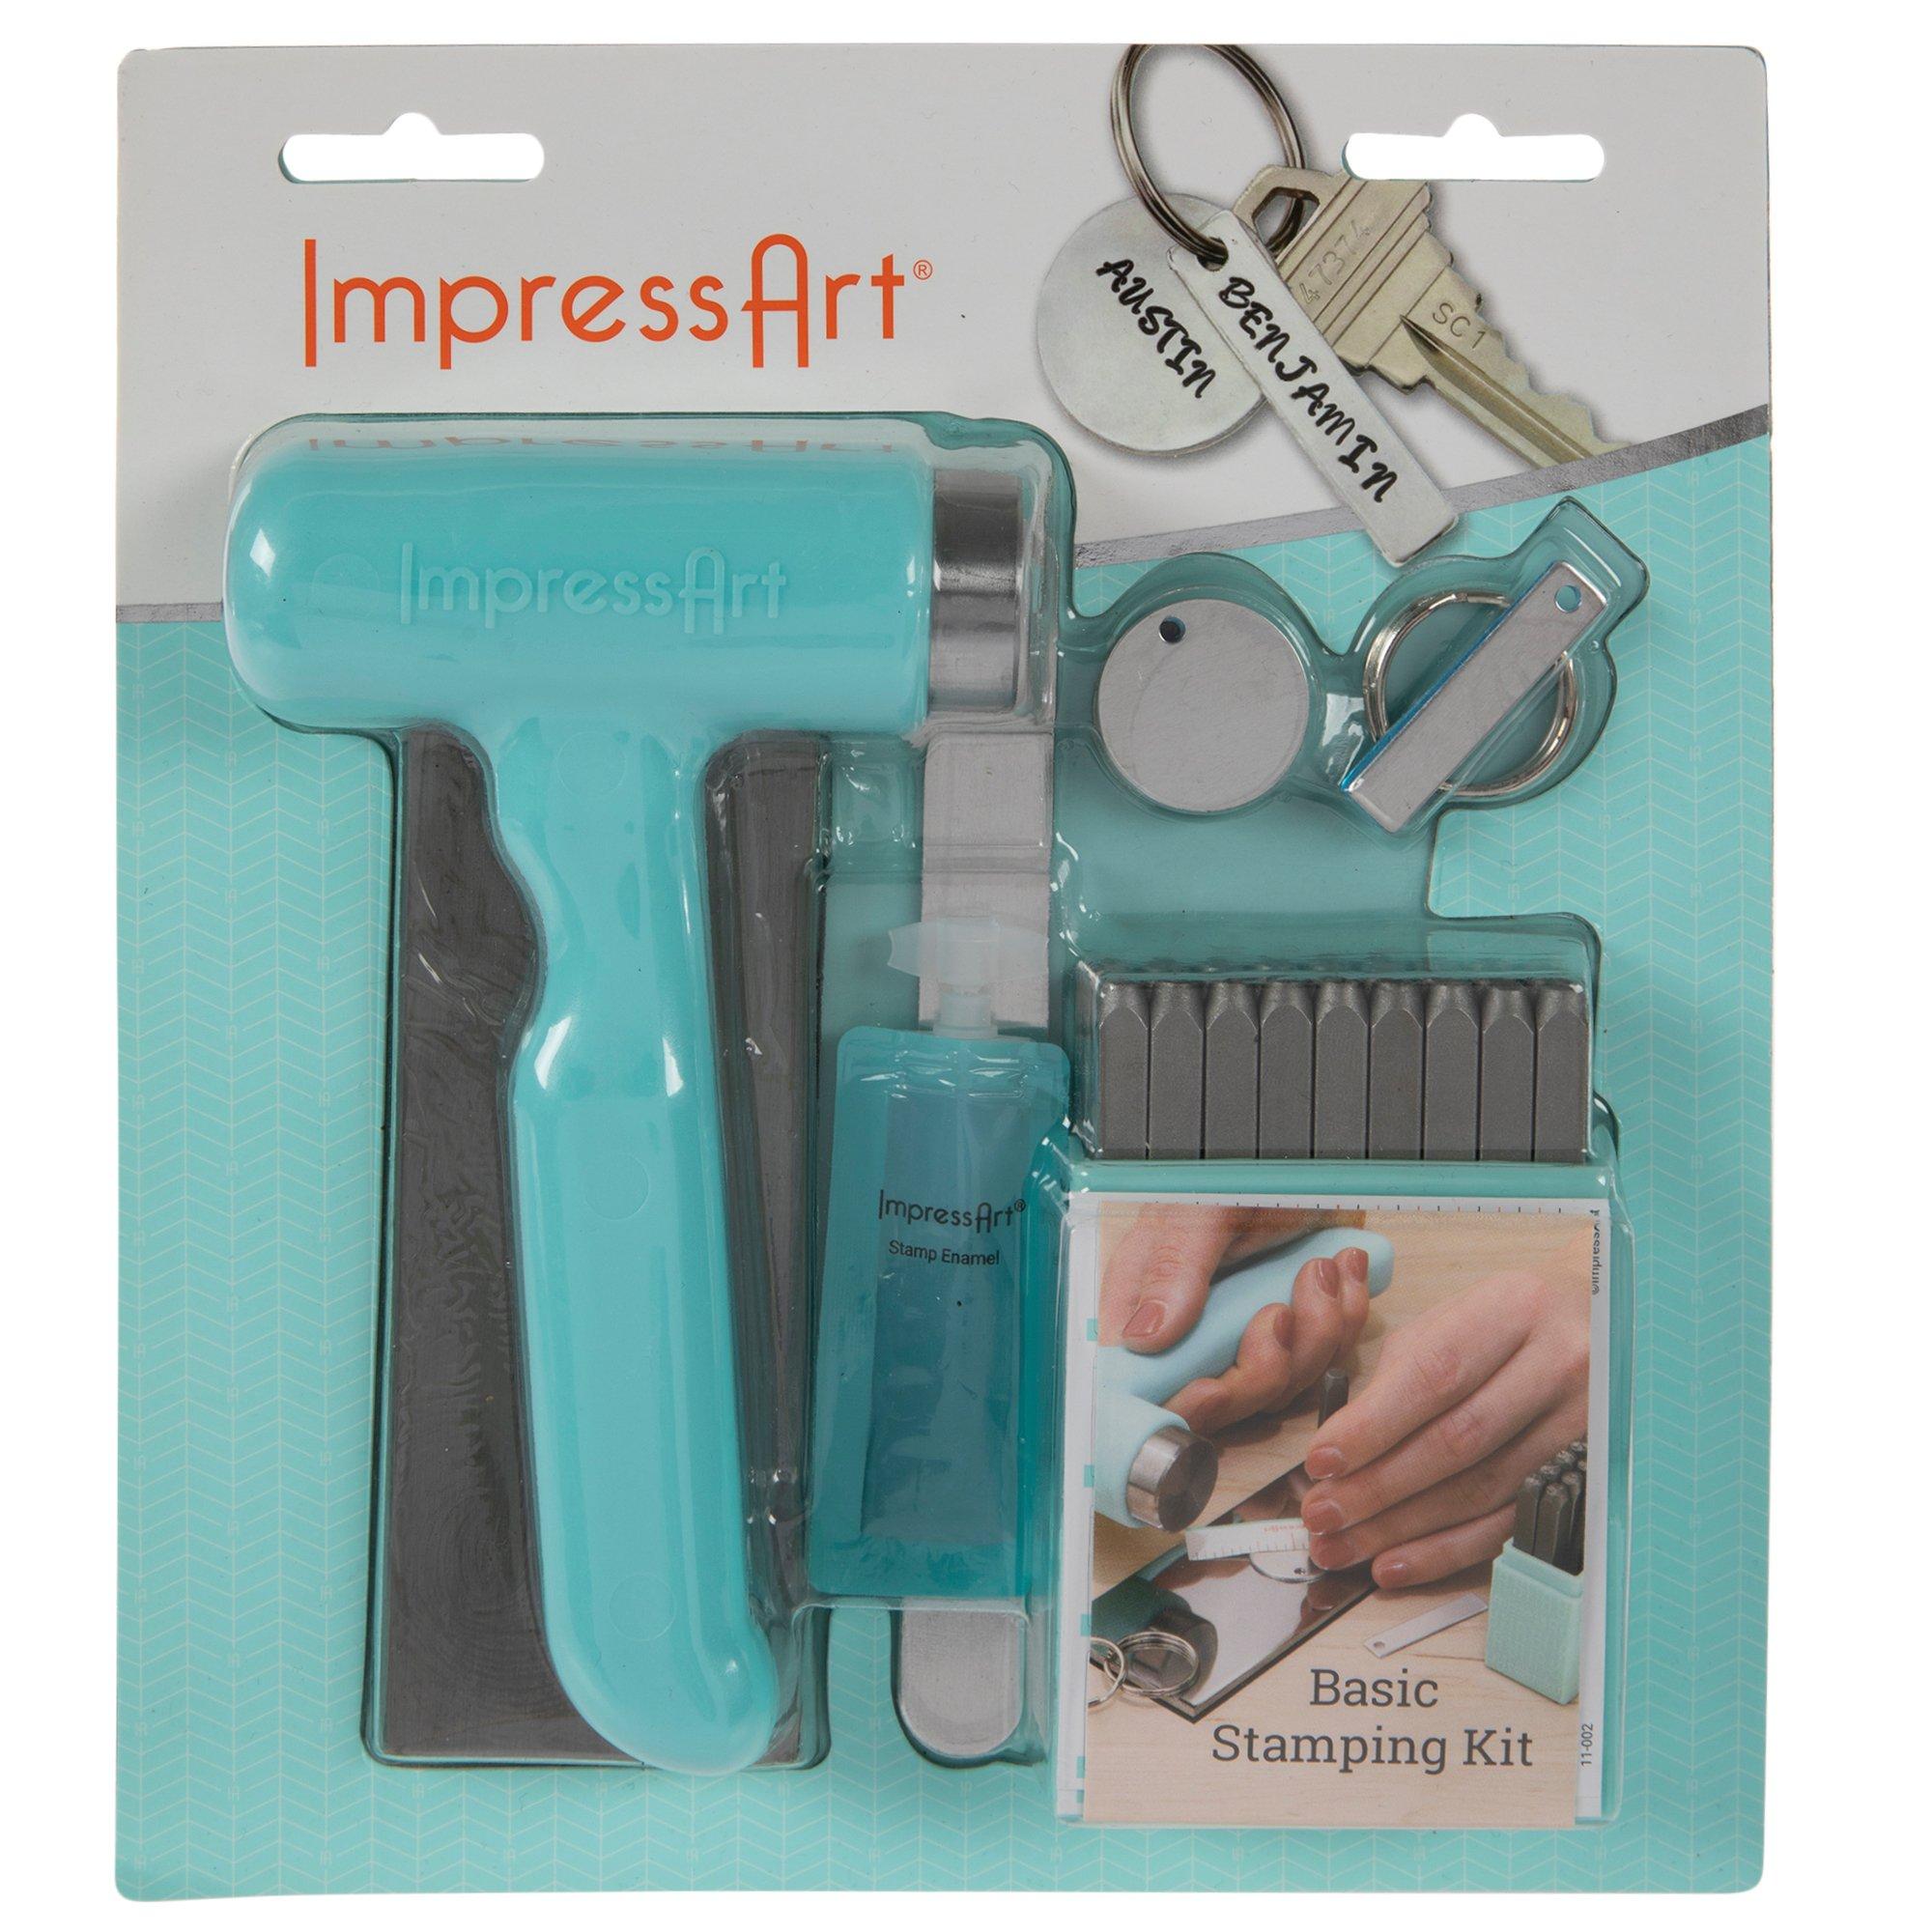 Impressart Metal Stamping - Kit Review & Demo - making dog tags